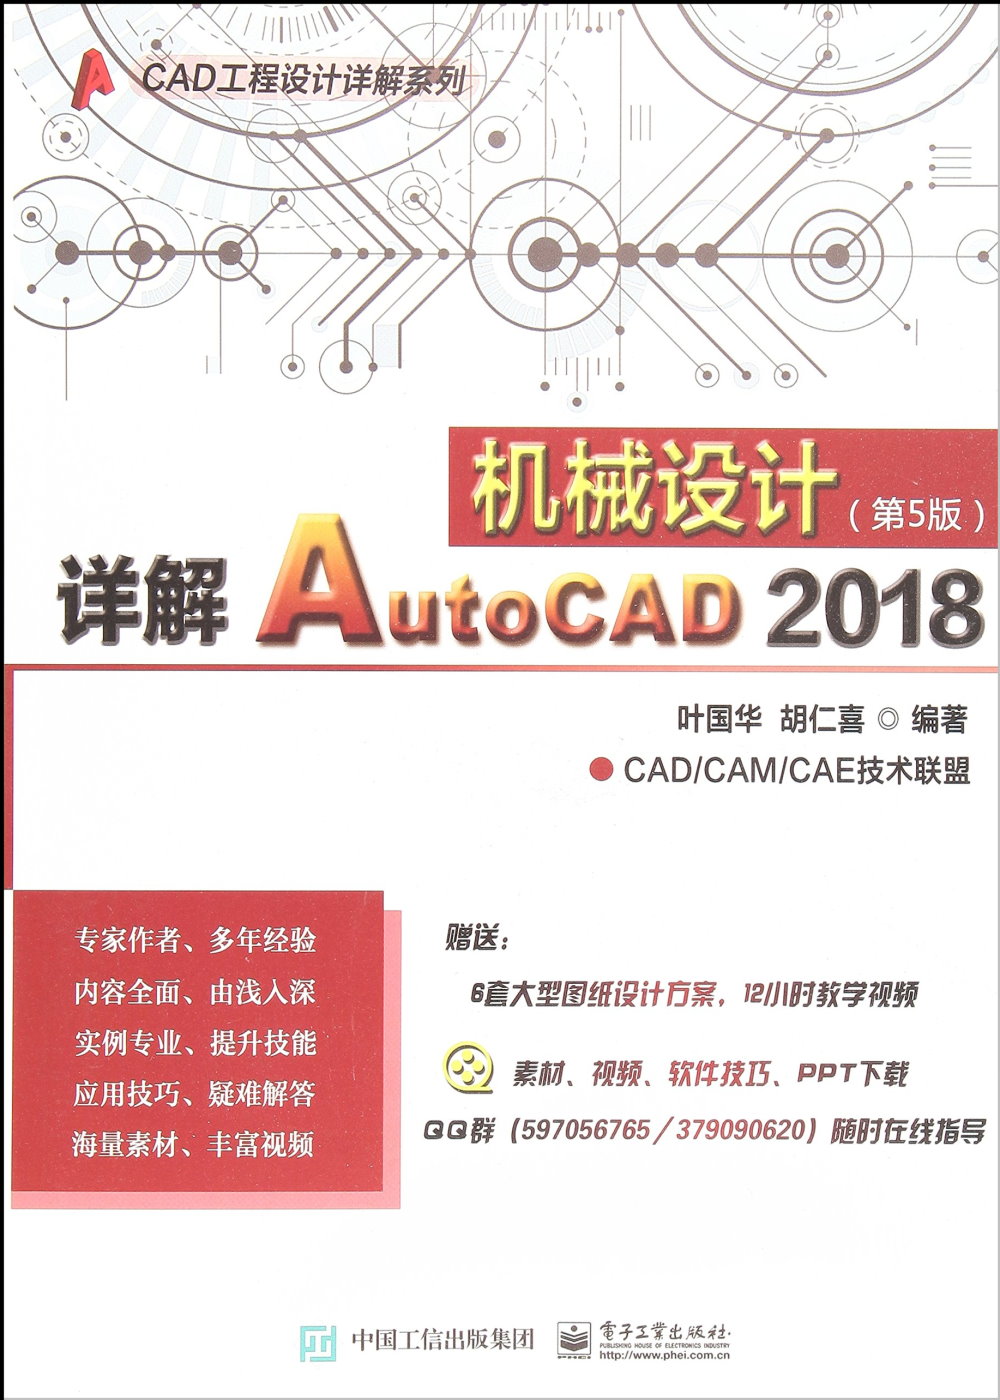 詳解AutoCAD 2018機械設計（第5版）